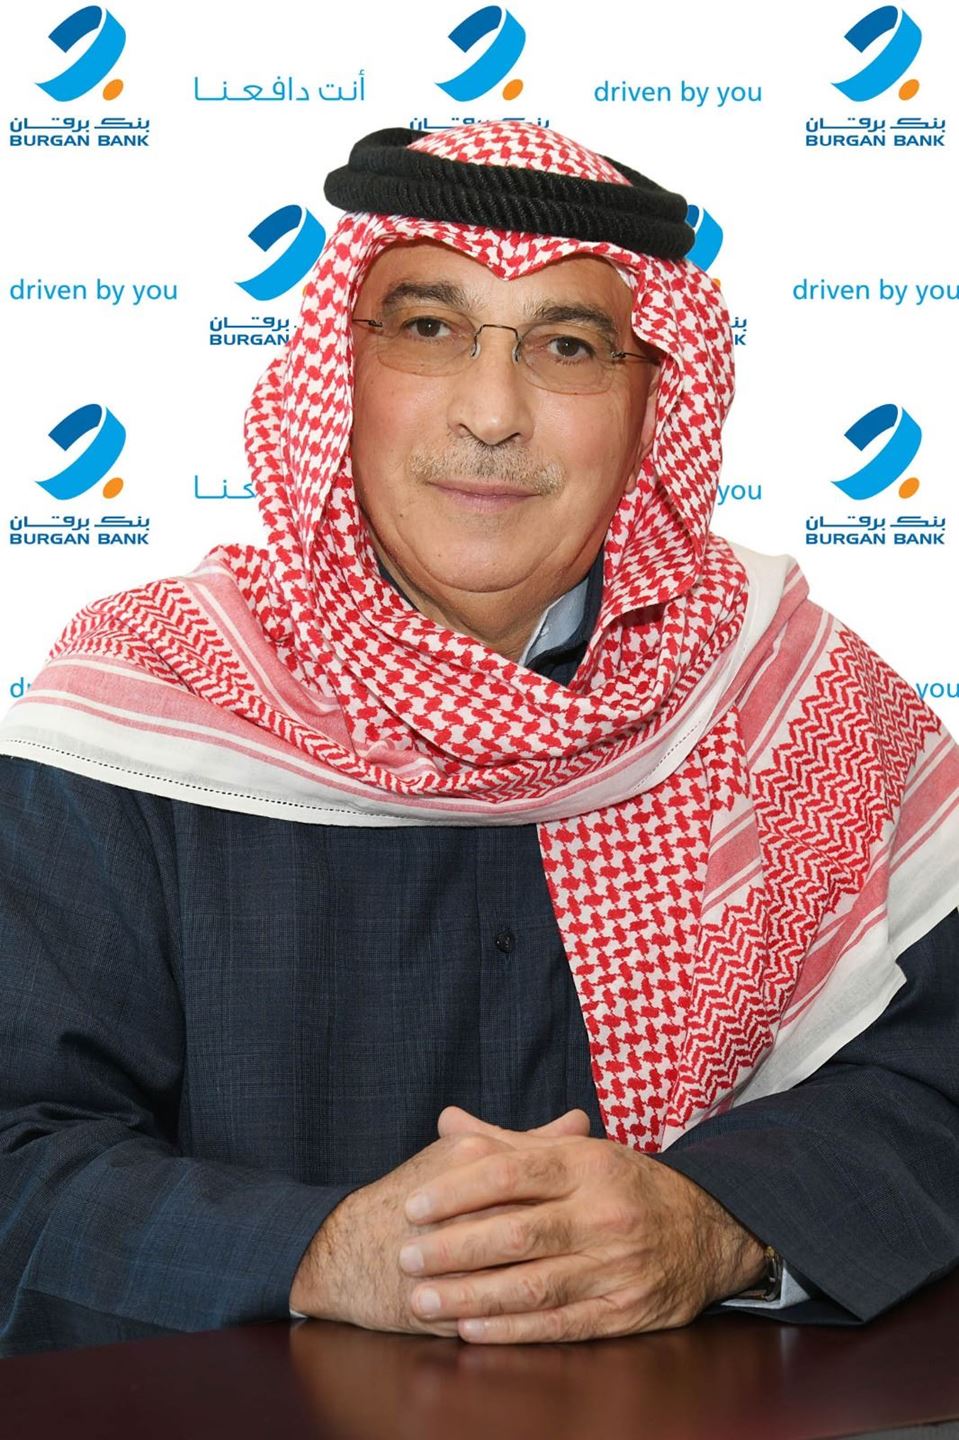 السيد مسعود محمود جوهر، نائب رئيس مجلس الإدارة والرئيس التنفيذي لمجموعة بنك برقان